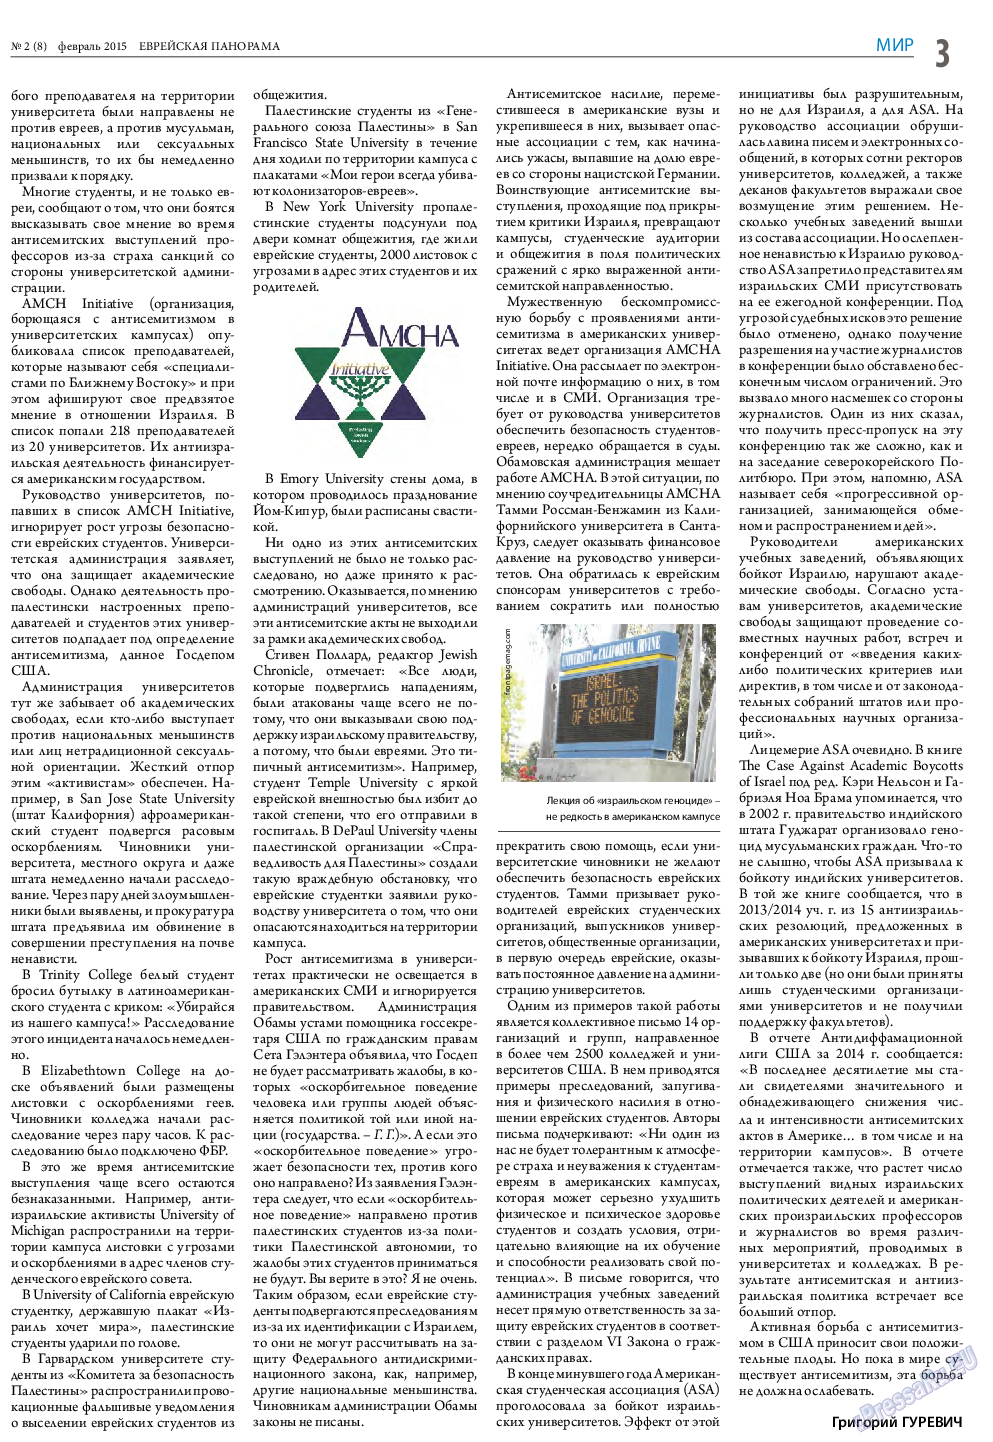 Еврейская панорама (газета). 2015 год, номер 2, стр. 3